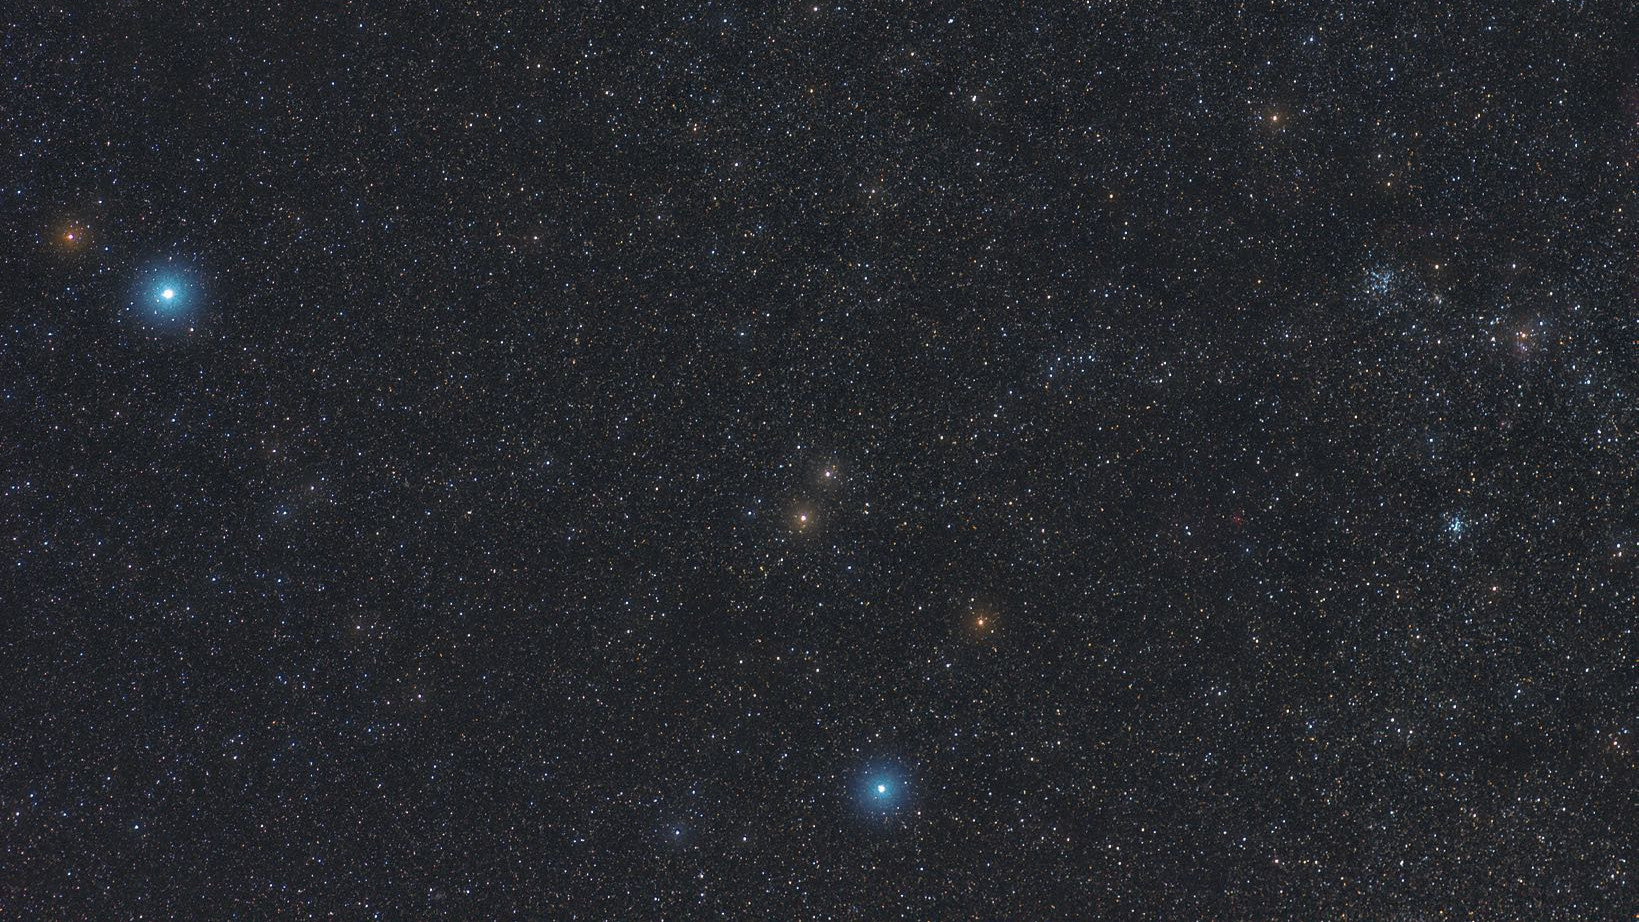 W gwiazdozbiorze Woźnicy znajduje się wiele imponujących gromad gwiazd. Marcus Degenkolbe